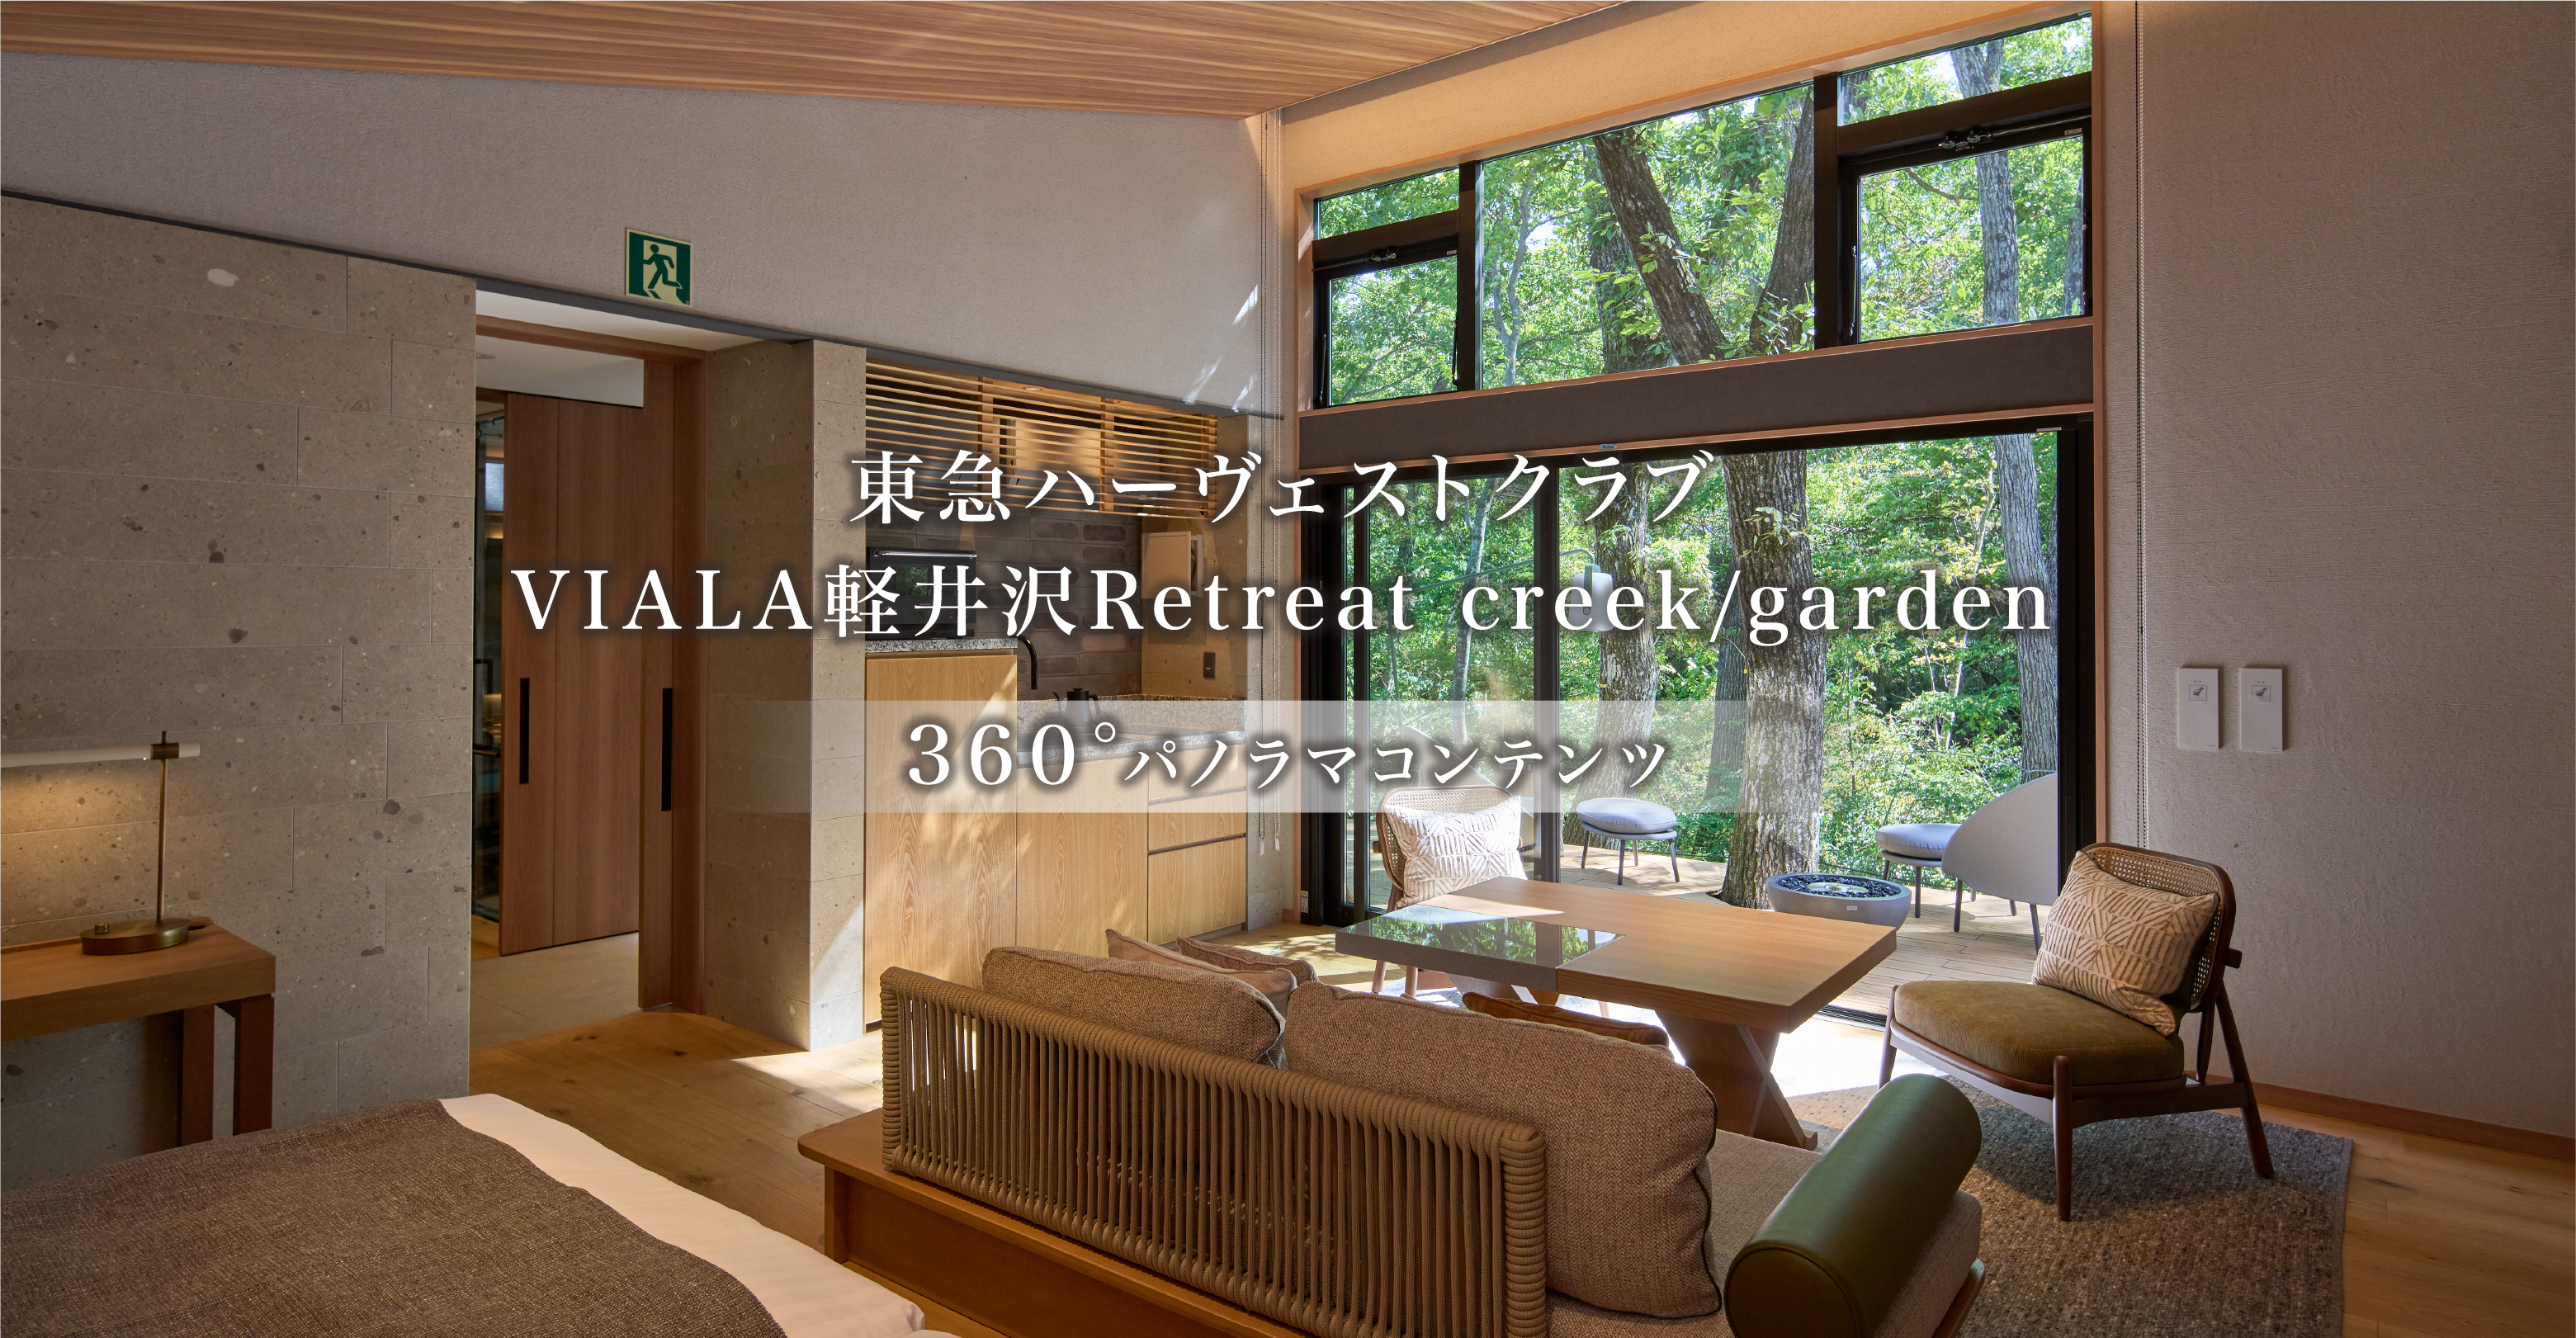 東急ハーヴェストクラブVIALA軽井沢Retreat creek/garden 360°パノラマコンテンツ